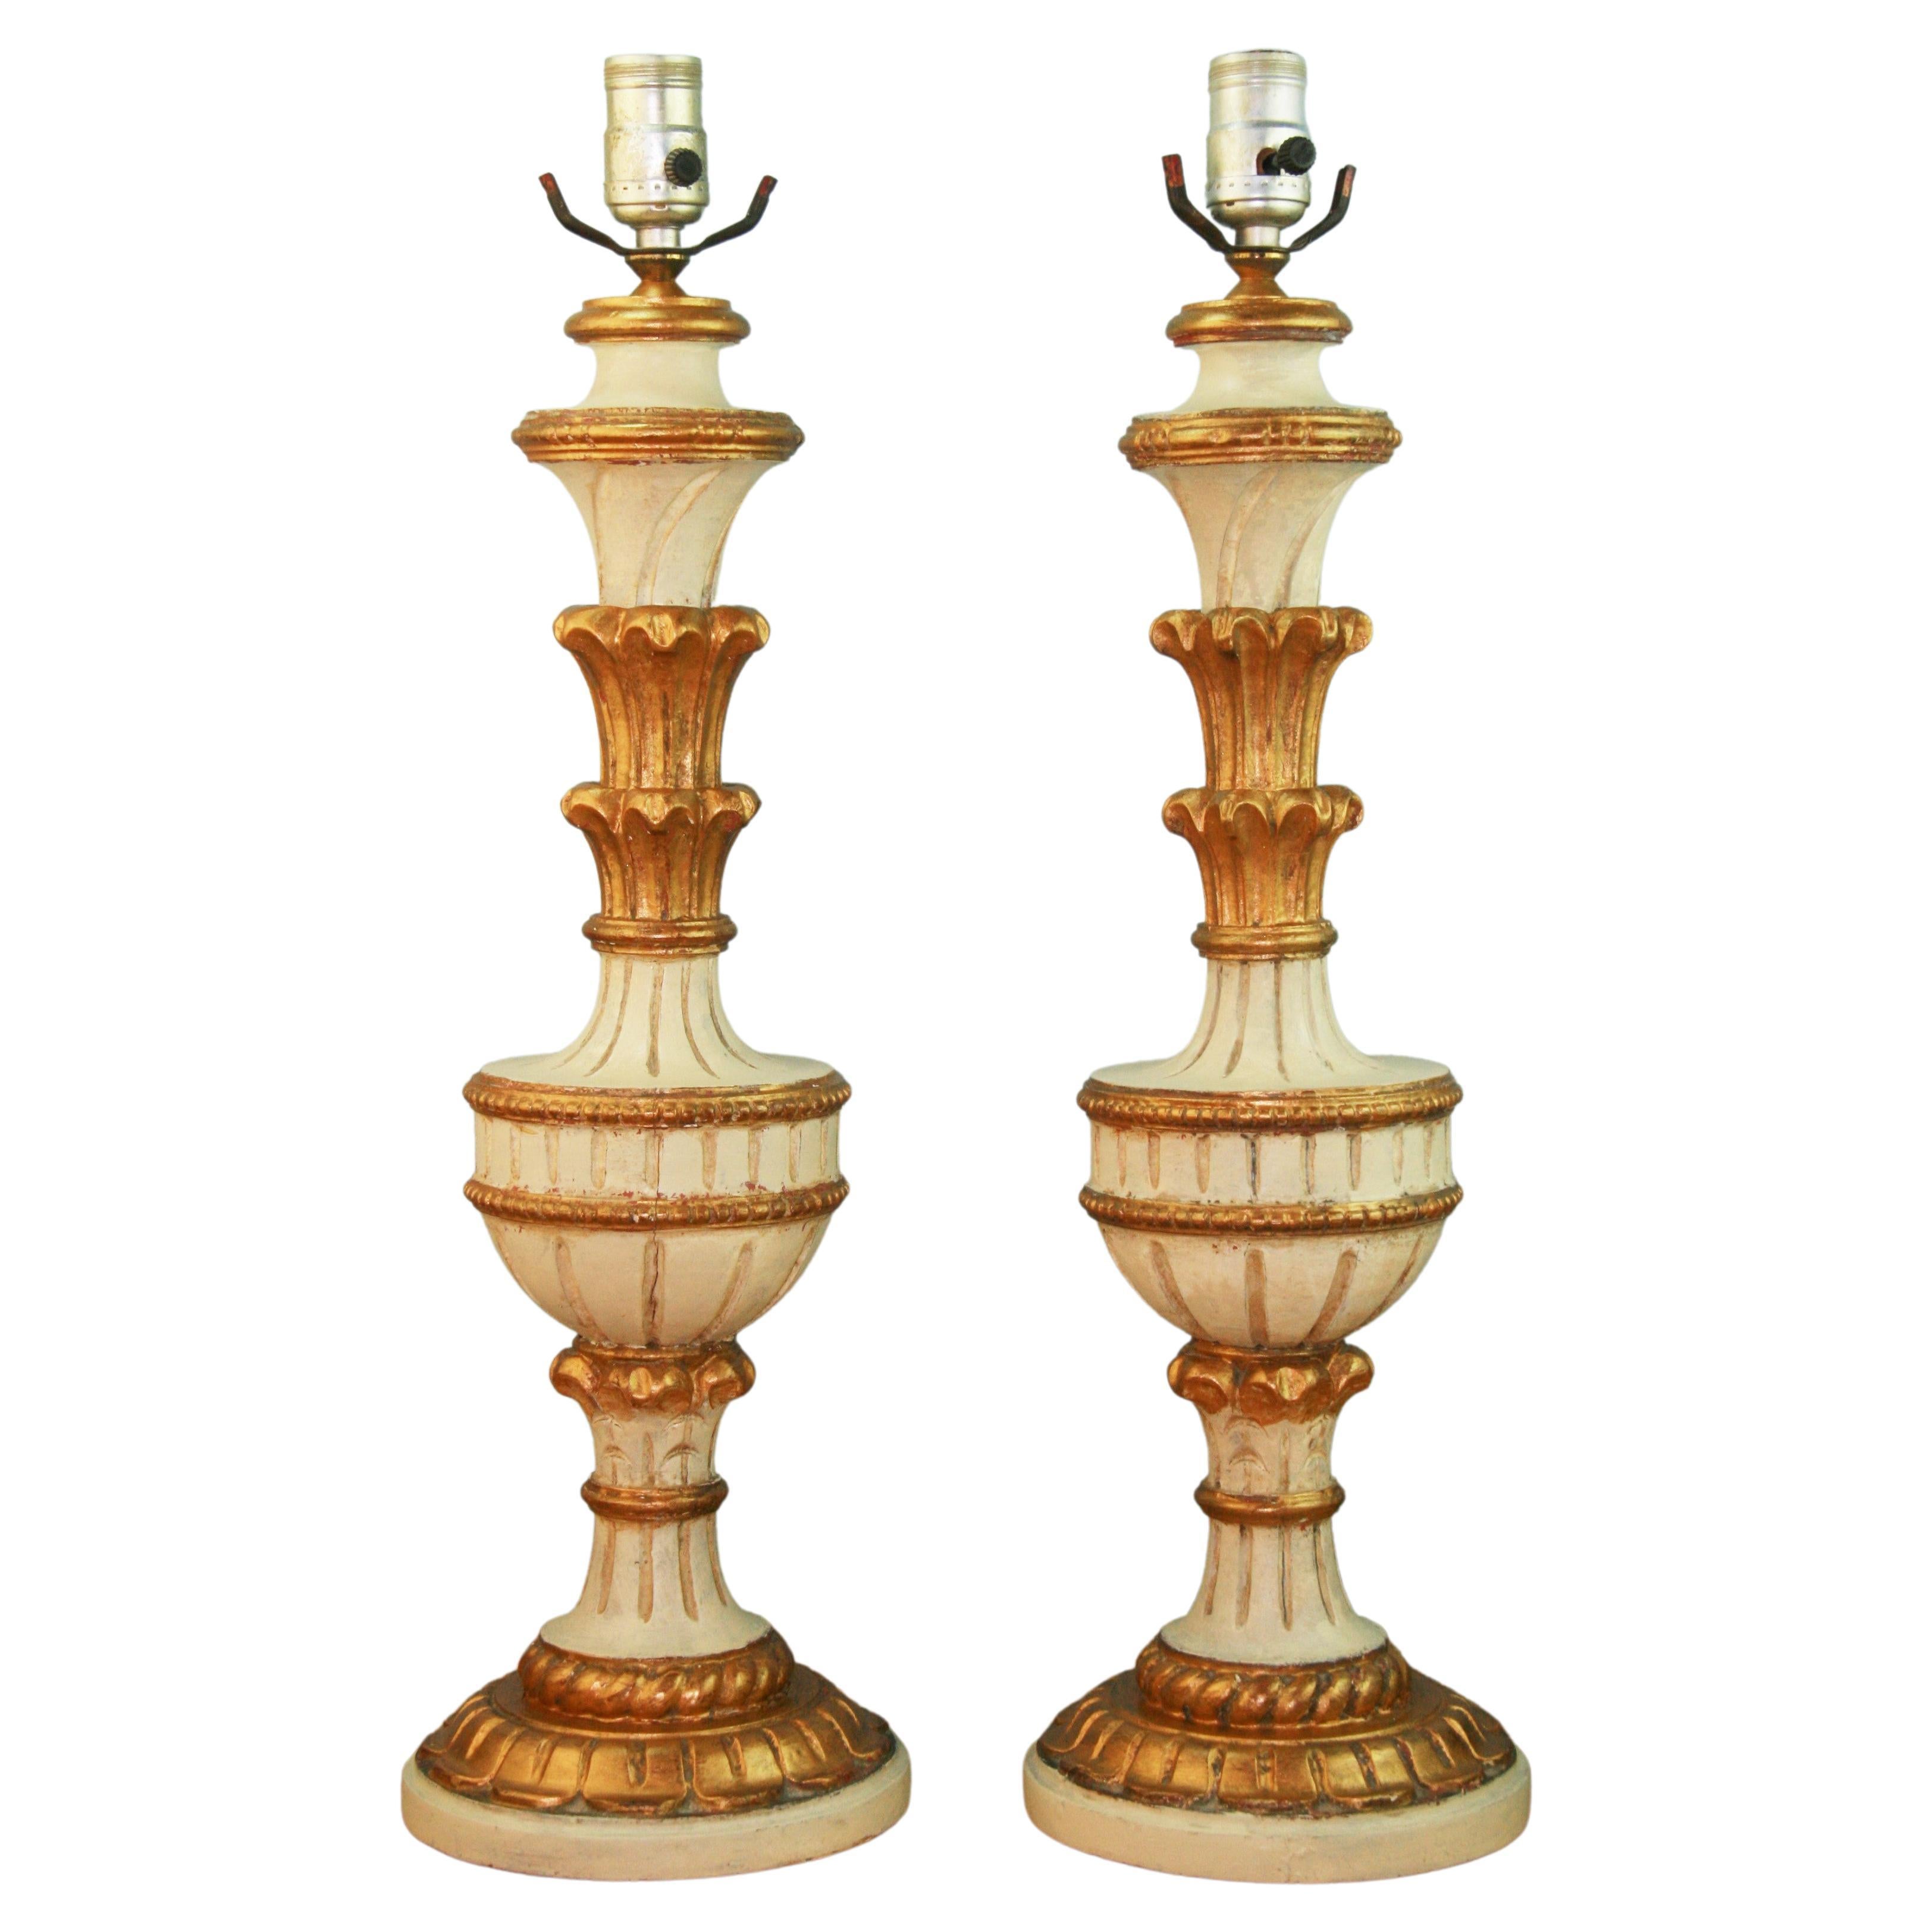 Paire de lampes italiennes en bois doré sculpté et peint, datant des années 1940 environ